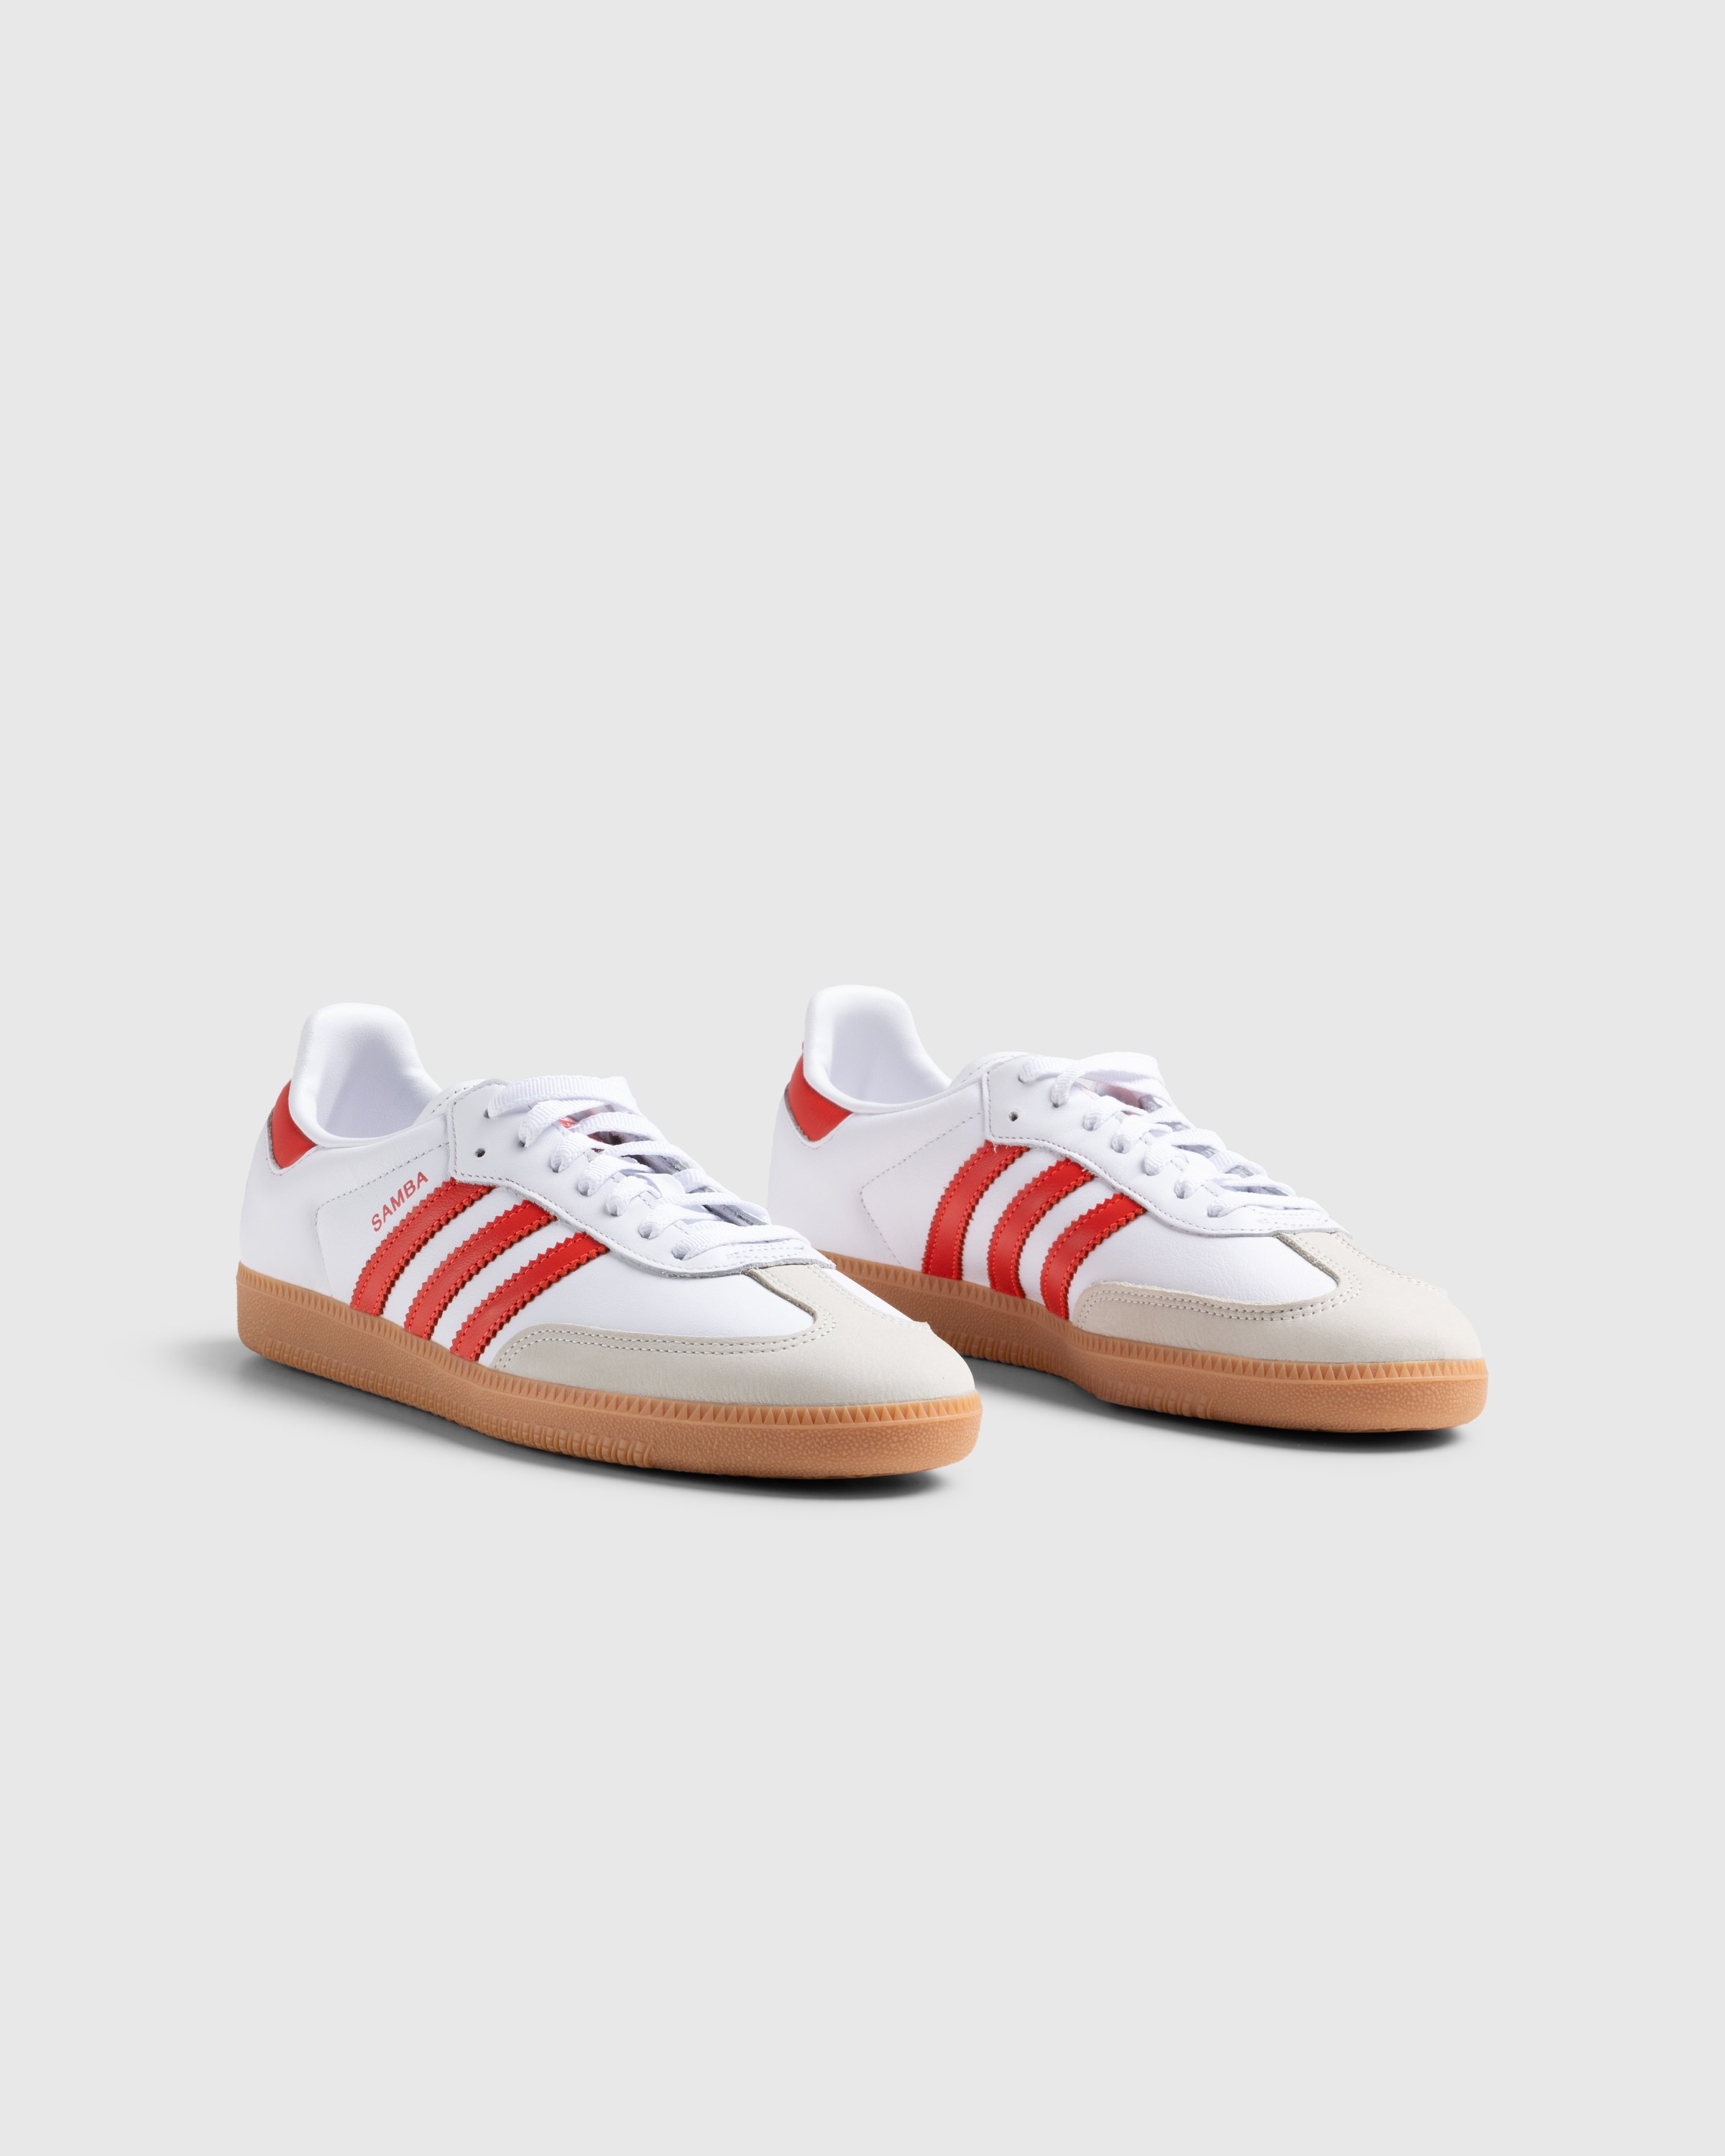 Adidas - Samba Og W          Ftwwht/Solred/Owhite - Footwear - White - Image 3